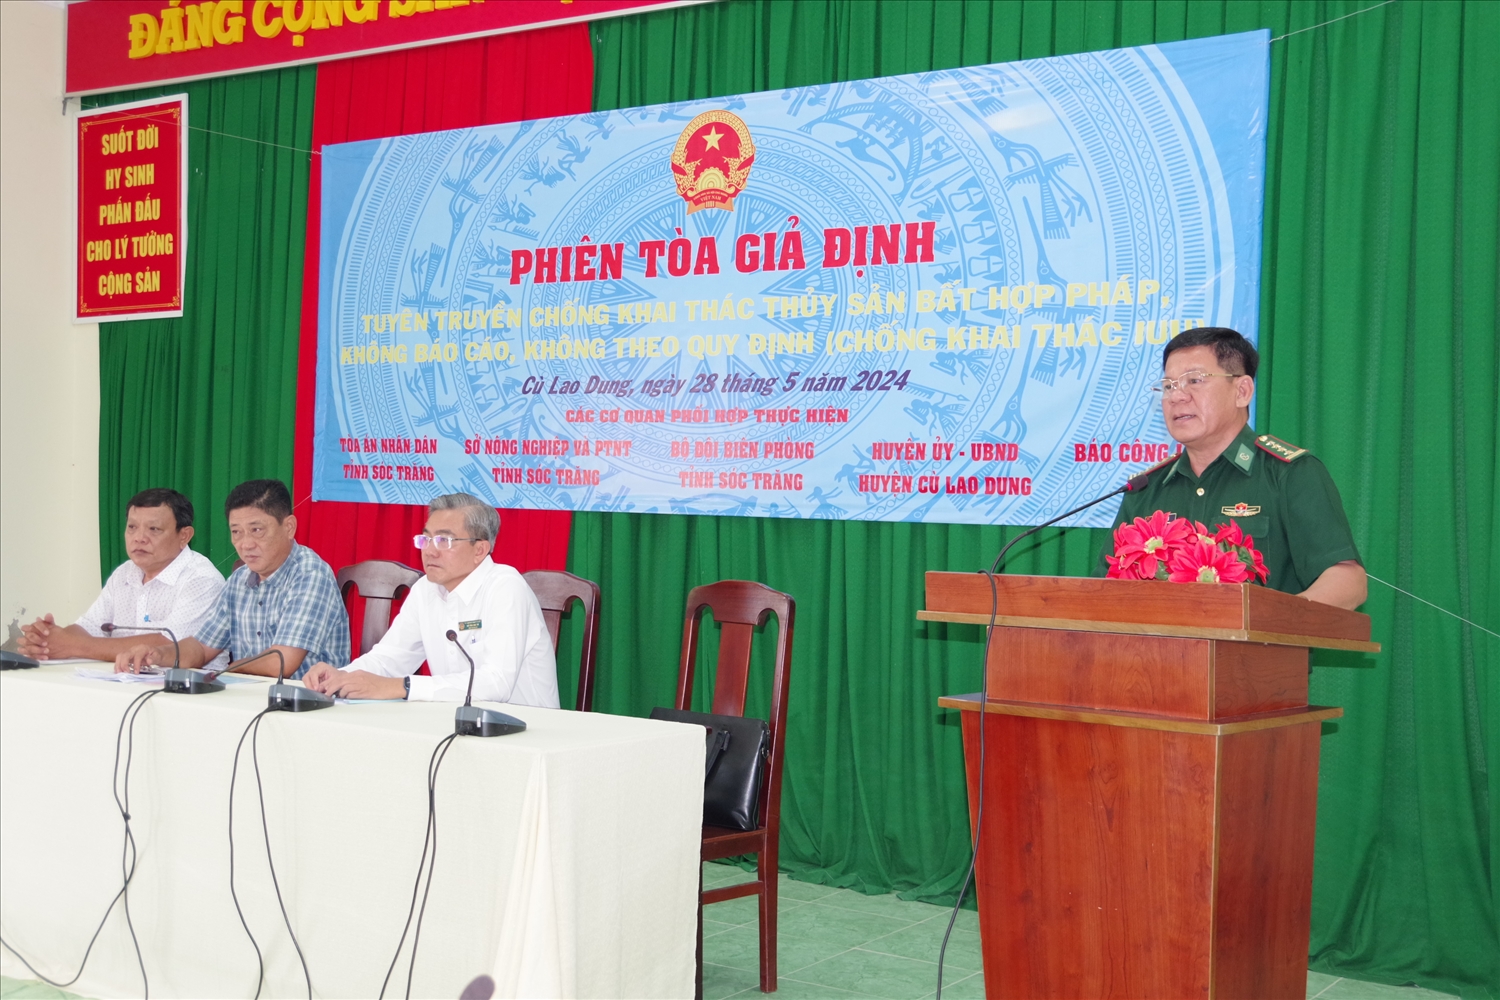 Đại tá Bùi Văn Bình, Phó Chỉ huy trưởng nghiệp vụ BĐBP tỉnh Sóc Trăng phát biểu khai mạc Phiên toà giả định 